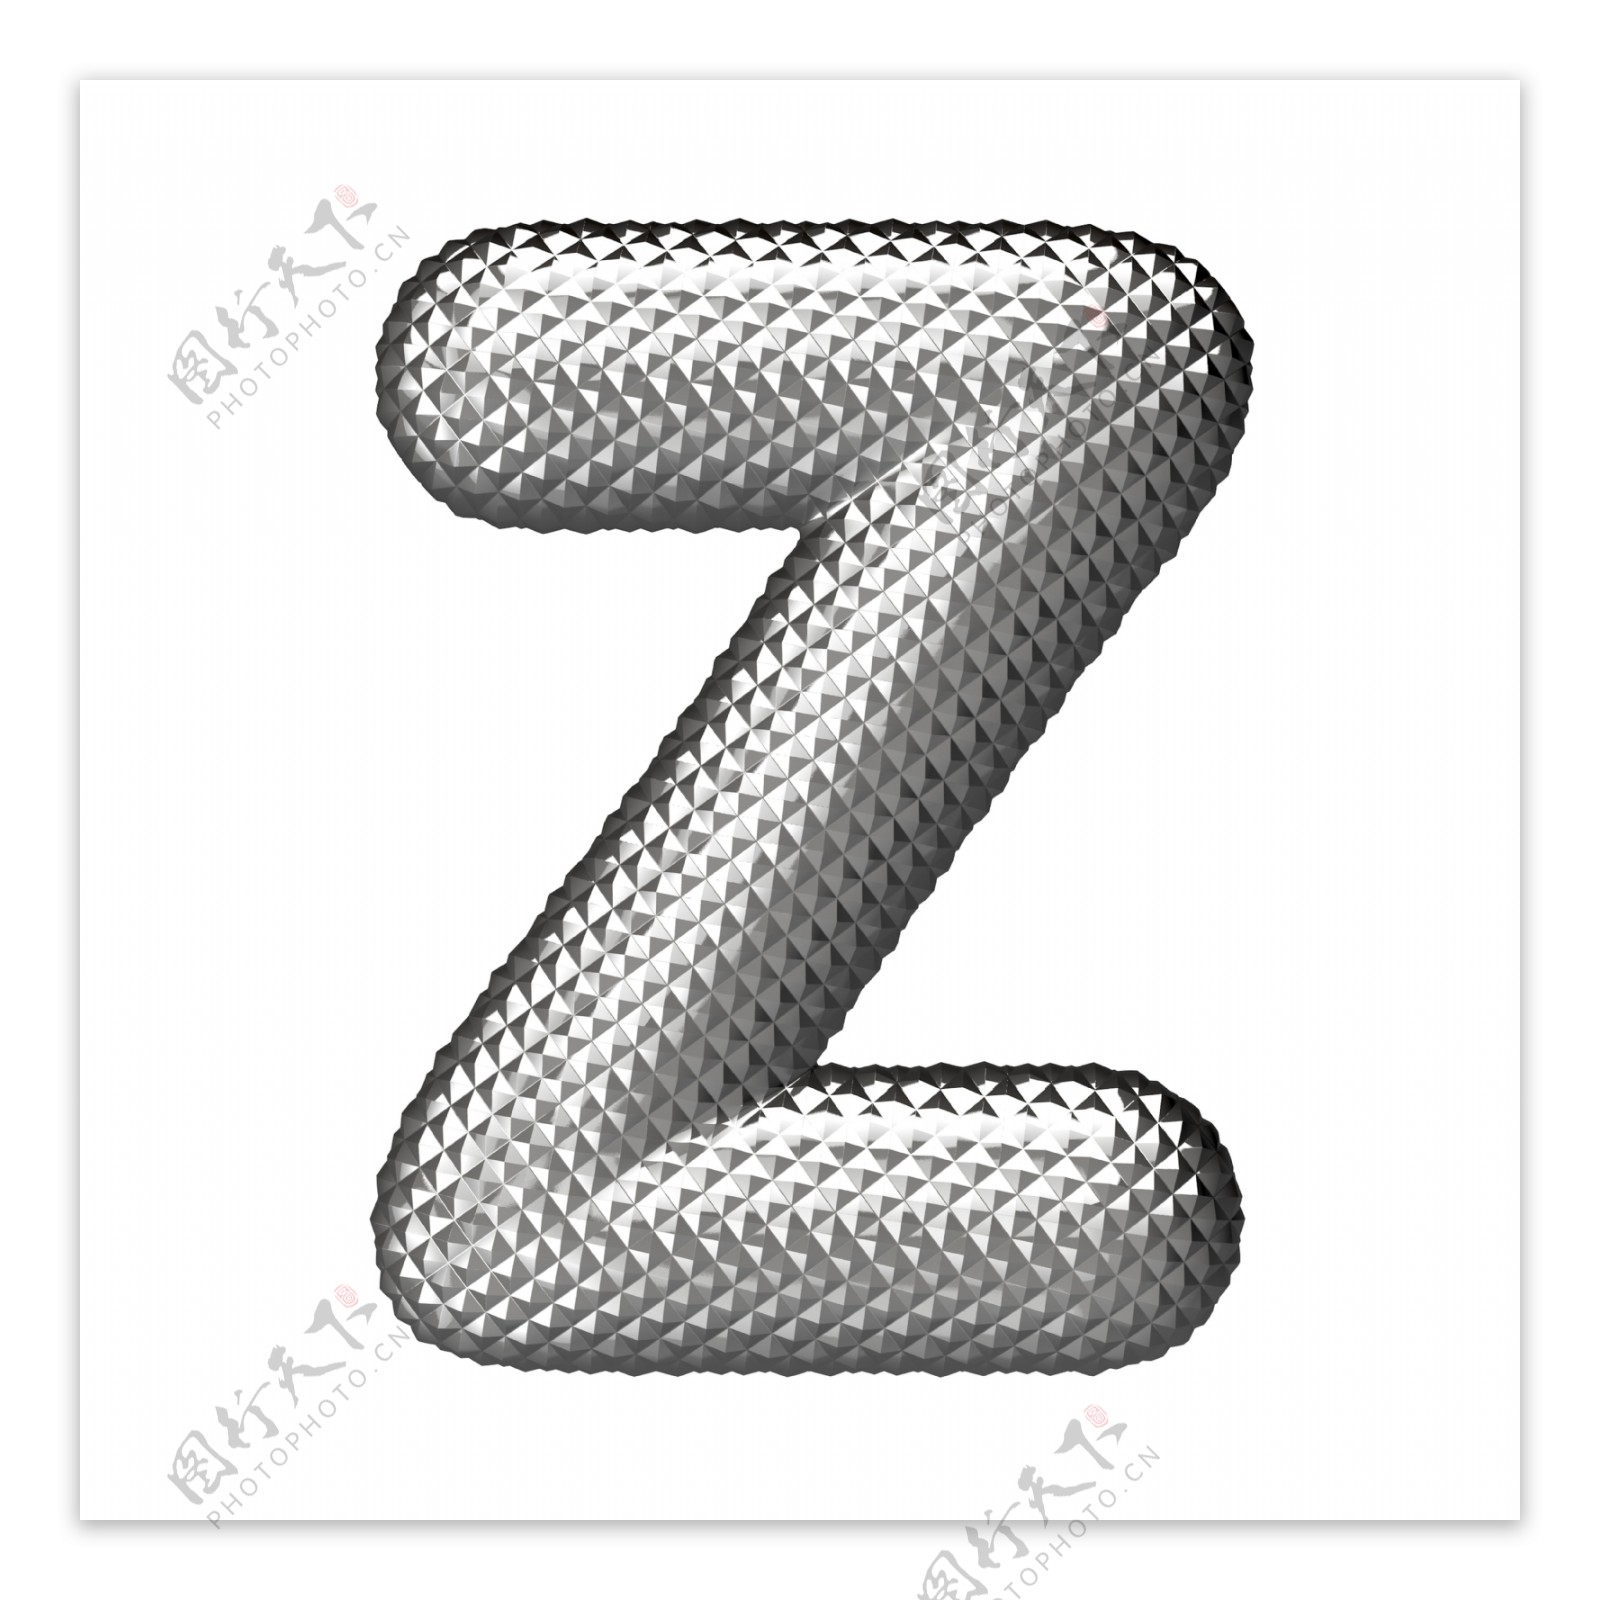 立体银色字母Z图片